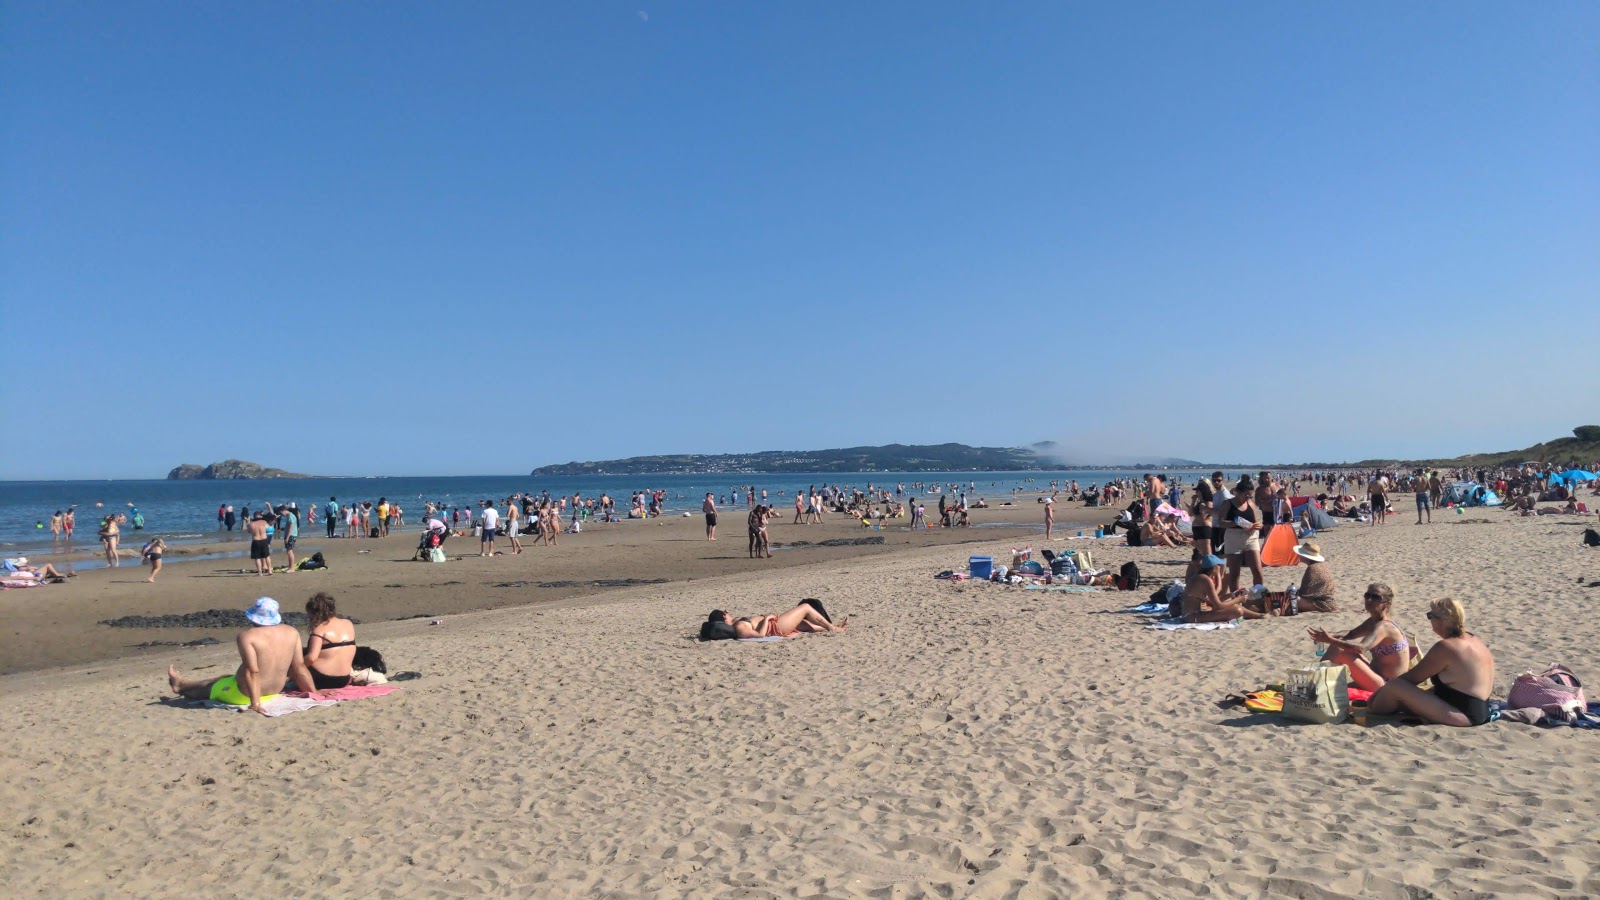 Portmarnock Beach'in fotoğrafı - rahatlamayı sevenler arasında popüler bir yer